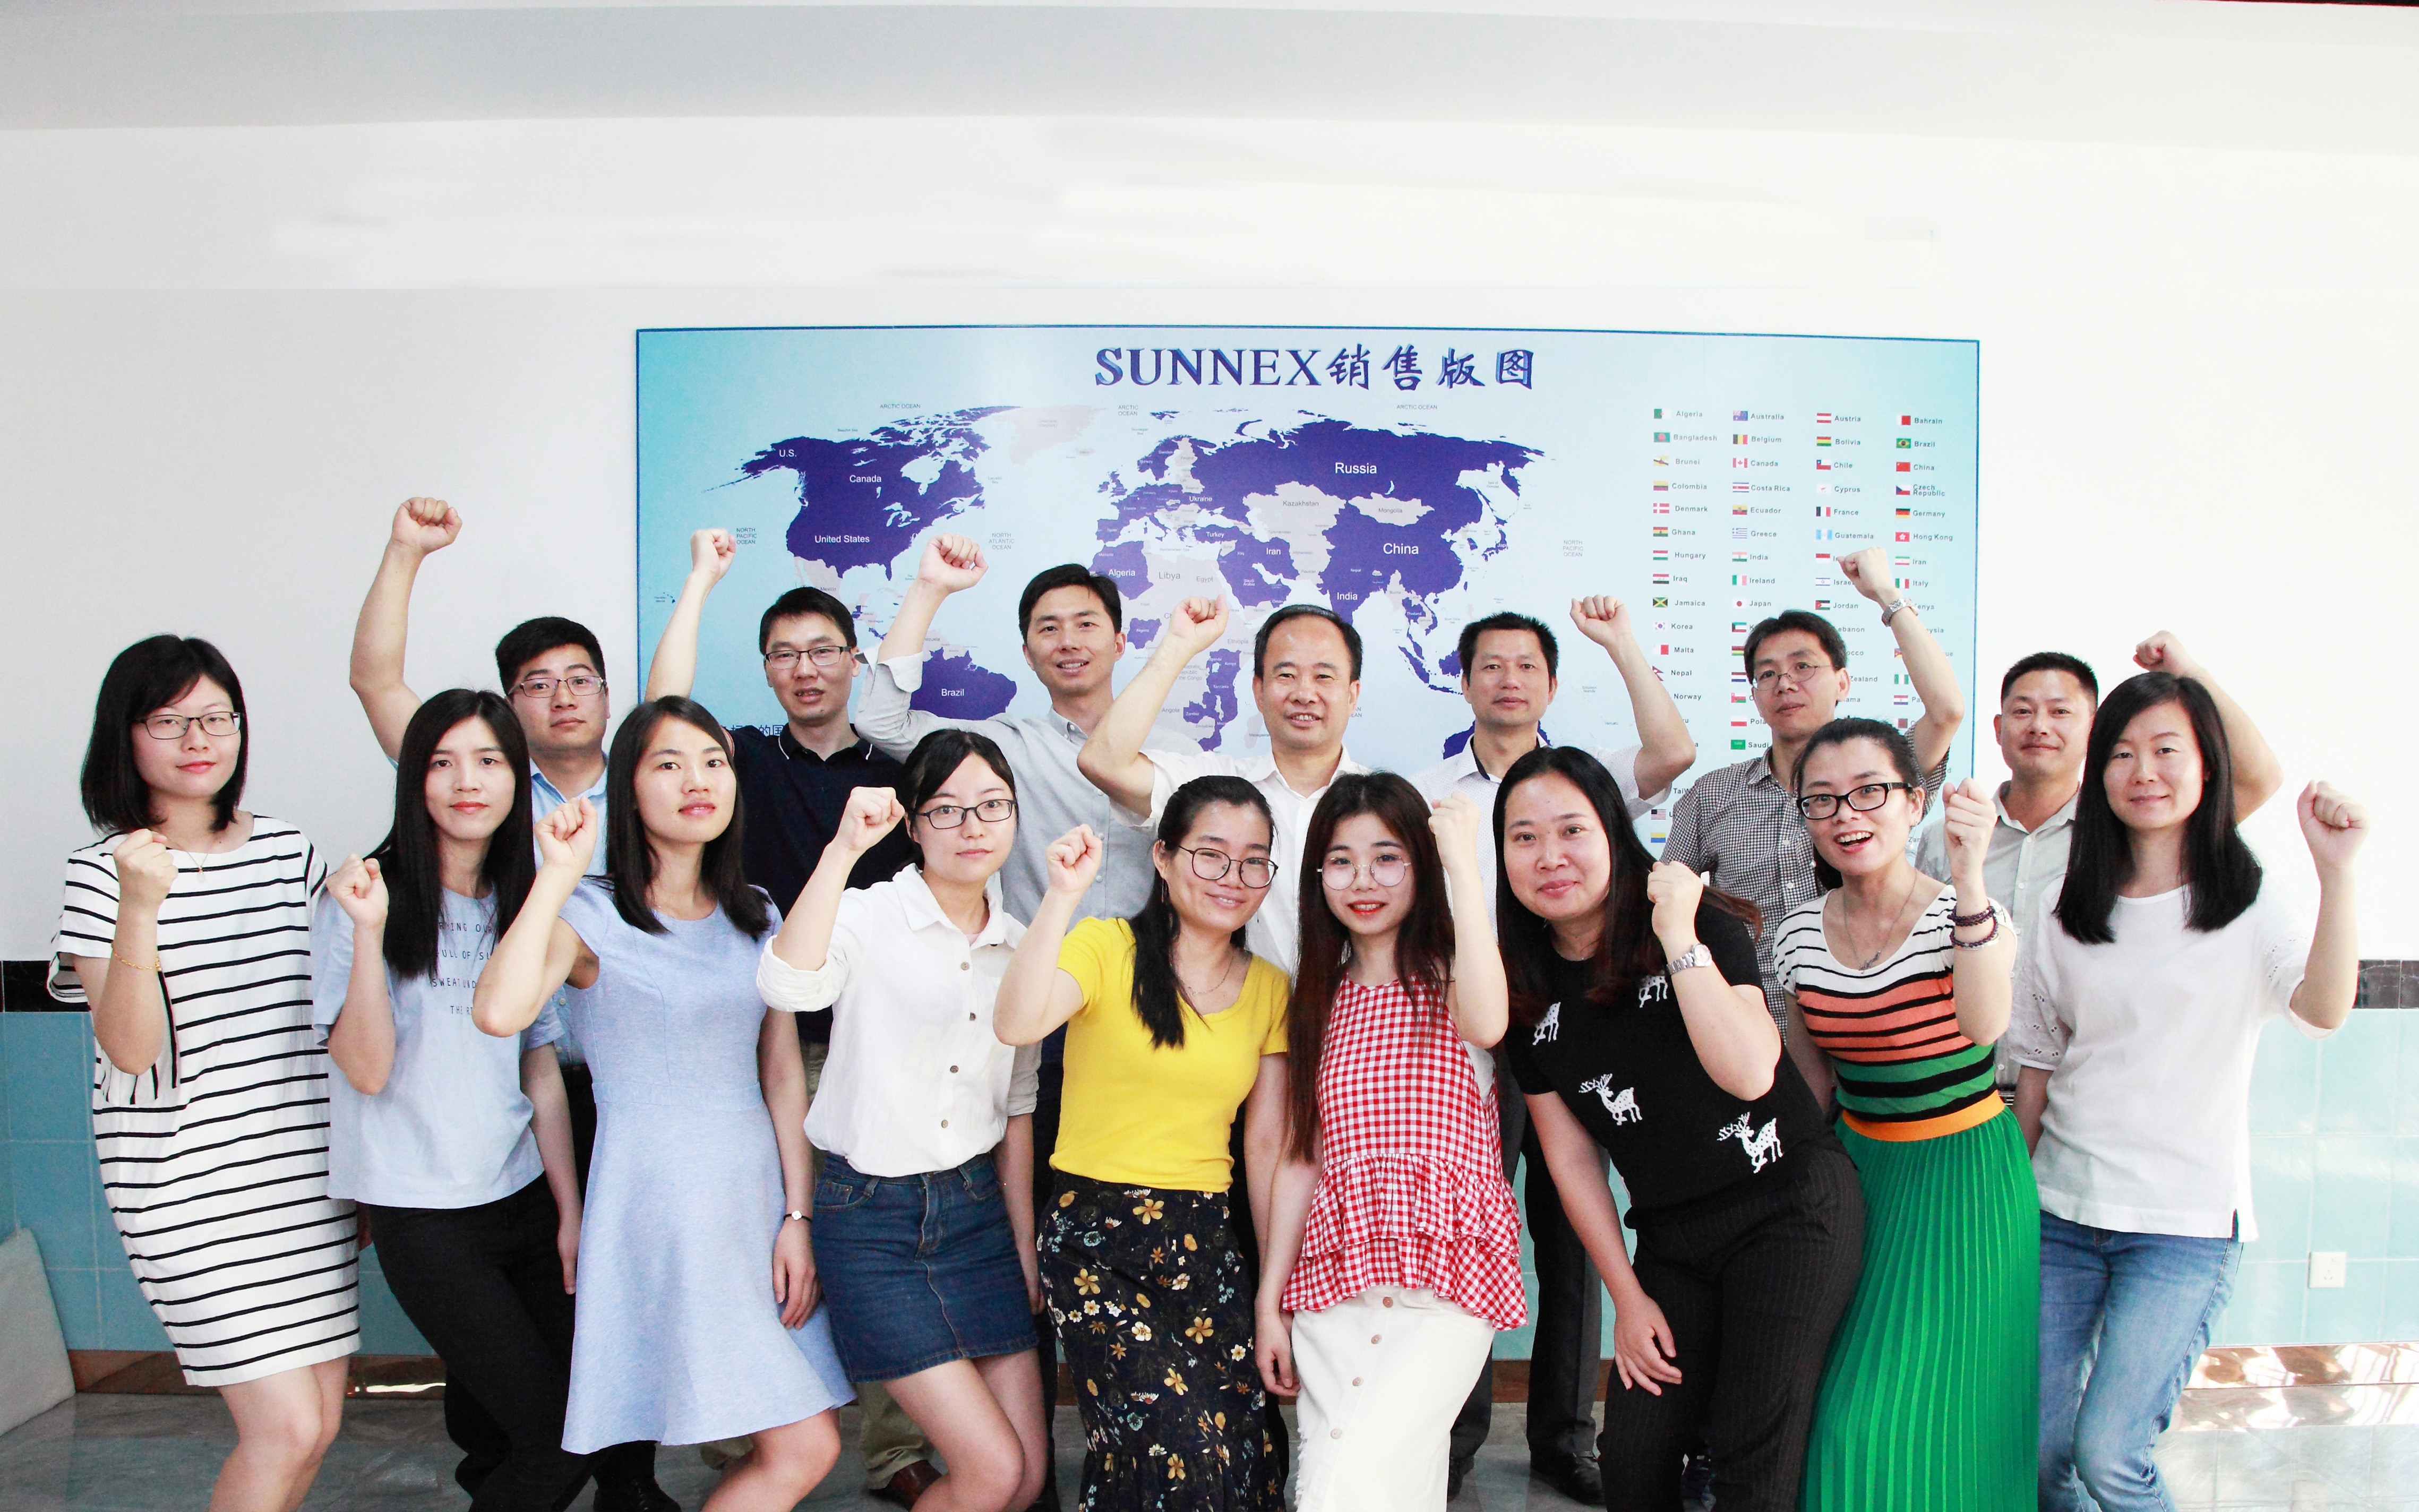 Integridad, innovación, alta calidad y servicio son las cualidades que Sunnex siempre ha defendido